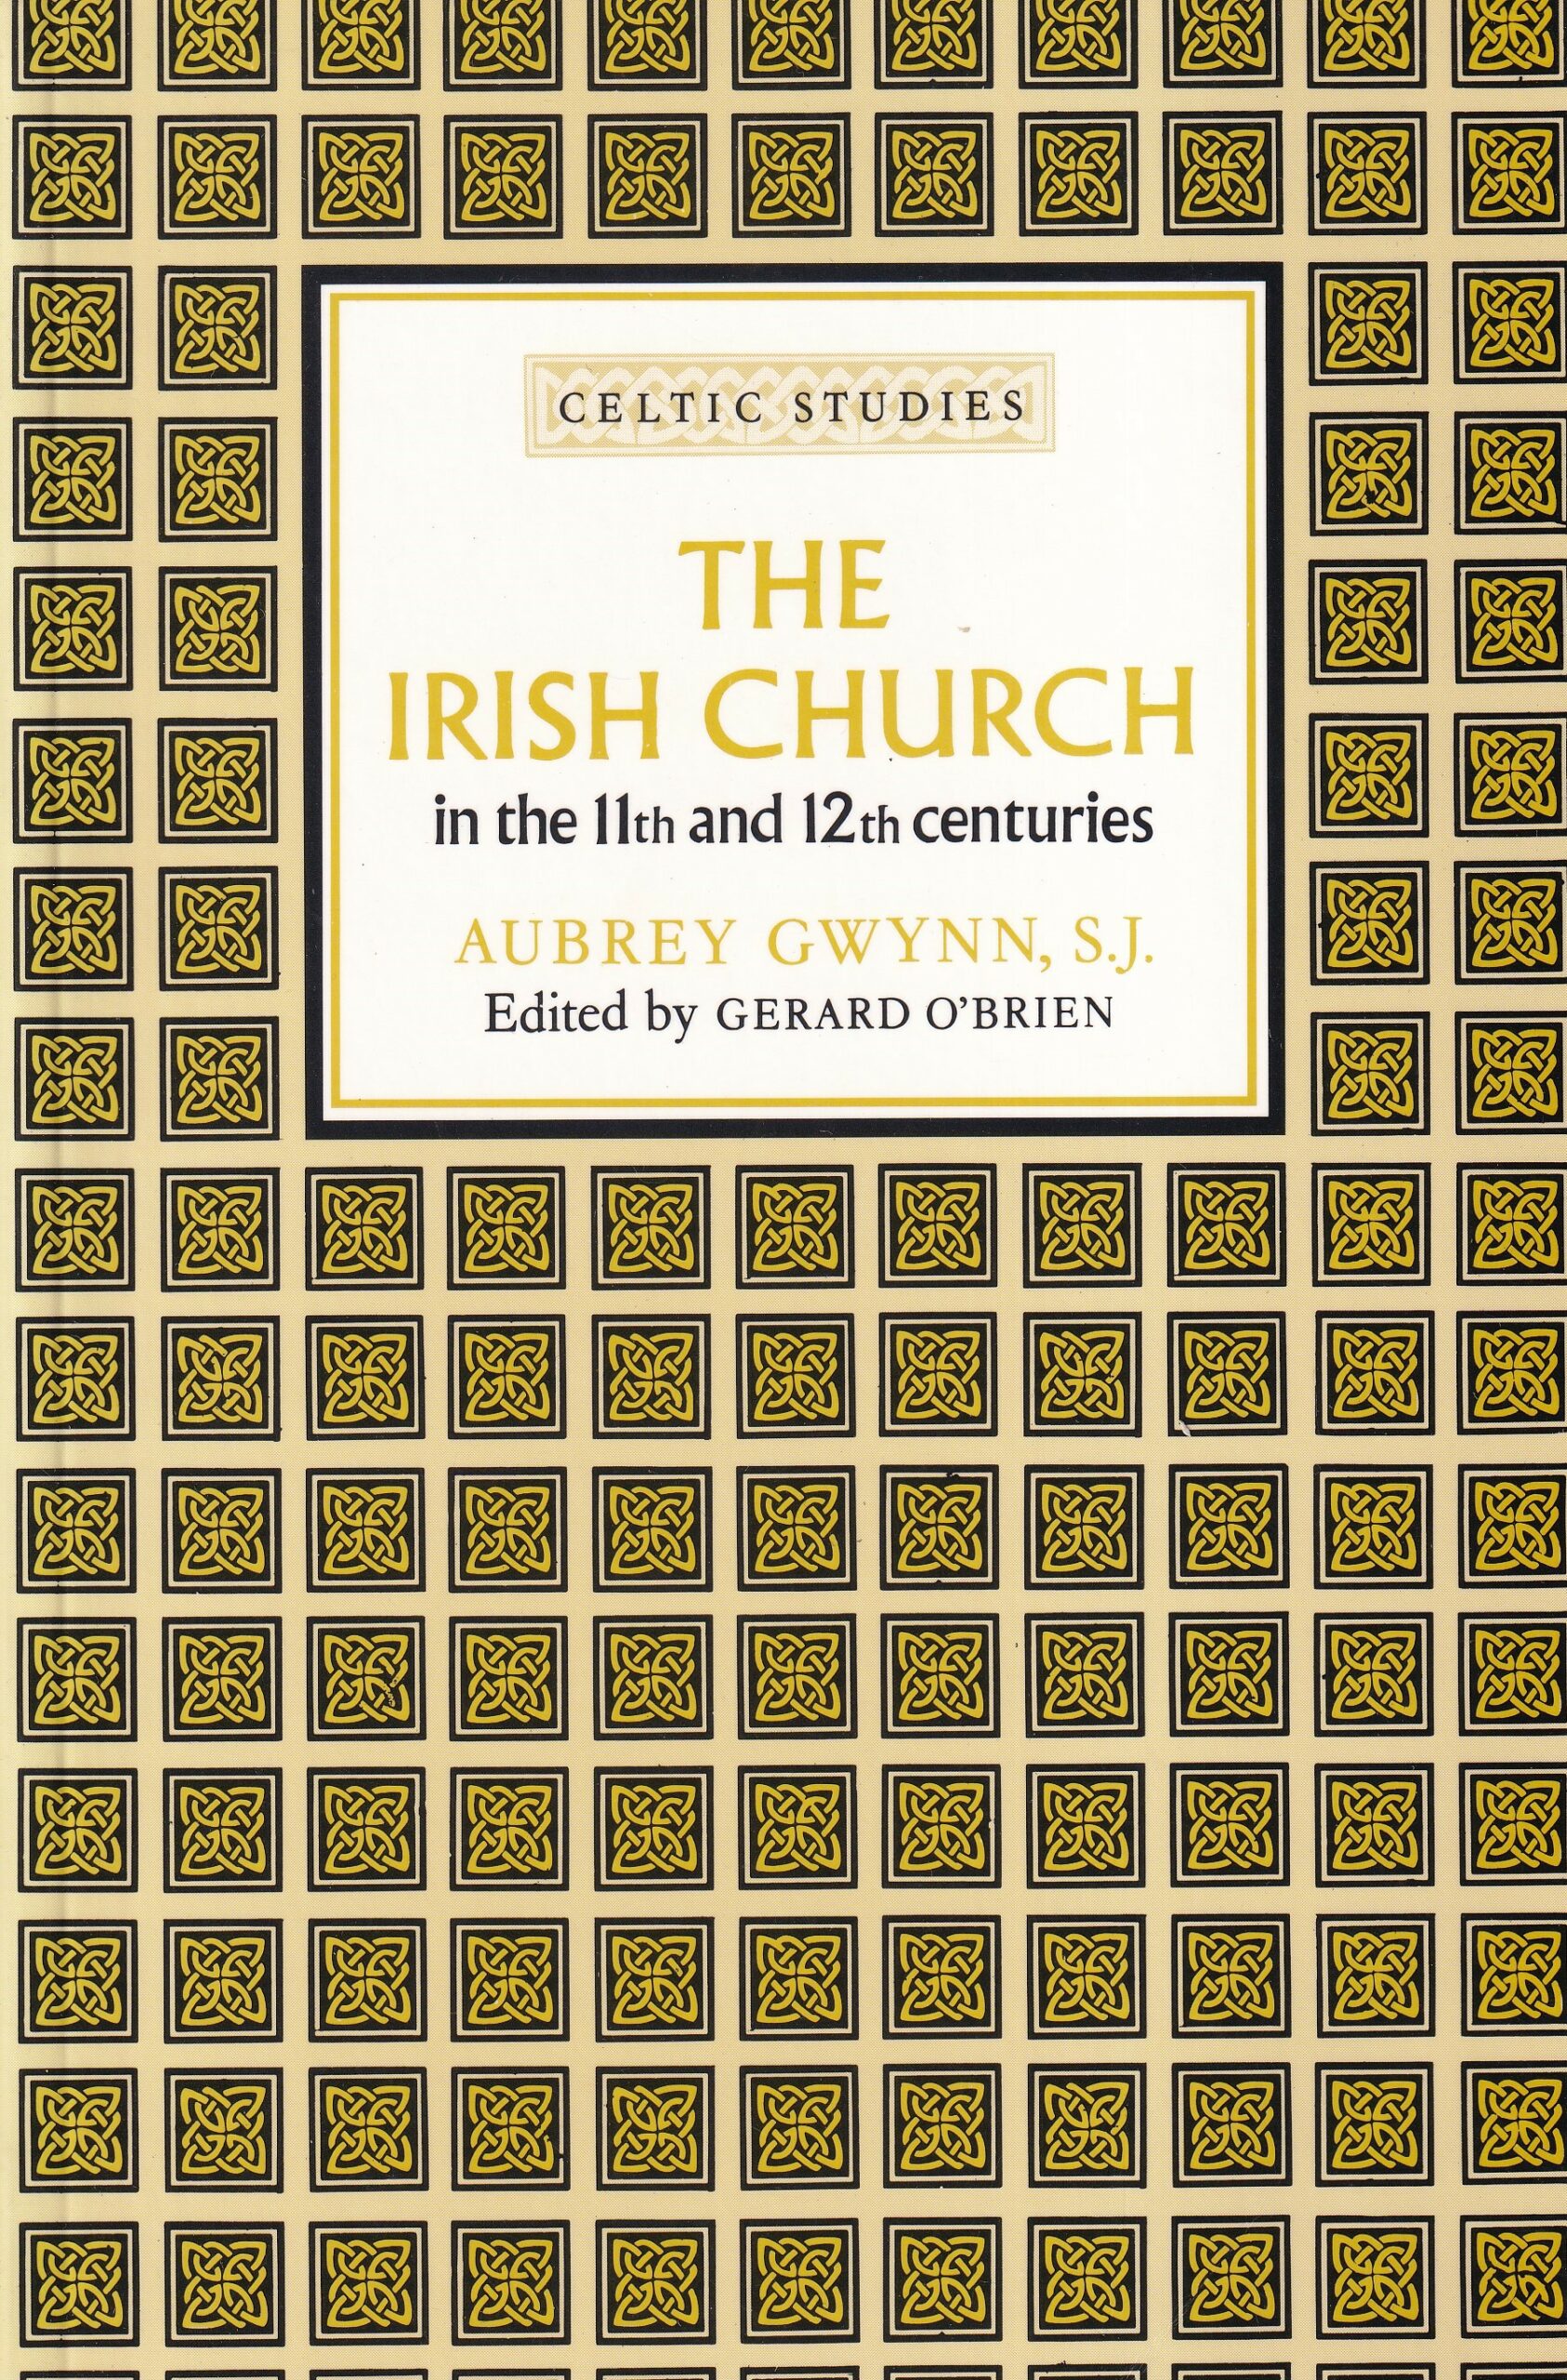 The Irish Church in the 11th and 12th Centuries by Aubrey Gwynn